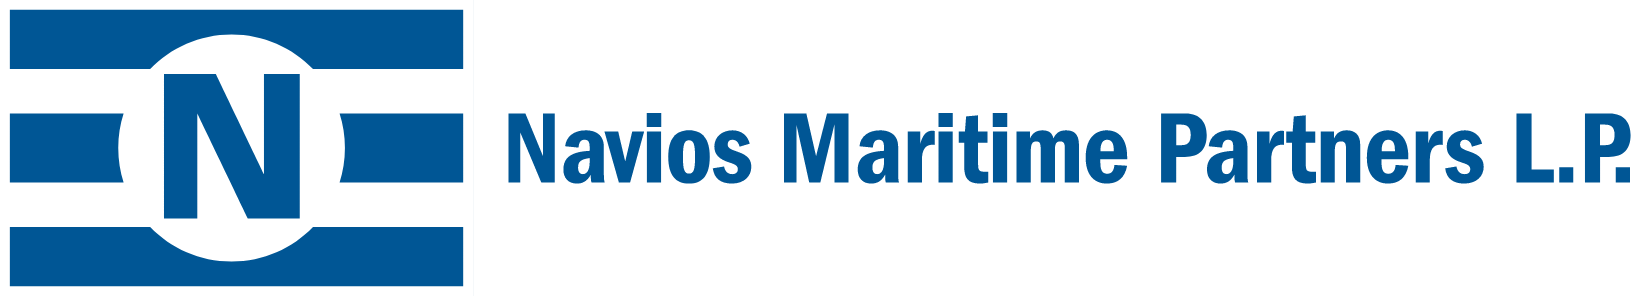 Navios Maritime Partners logo large (transparent PNG)